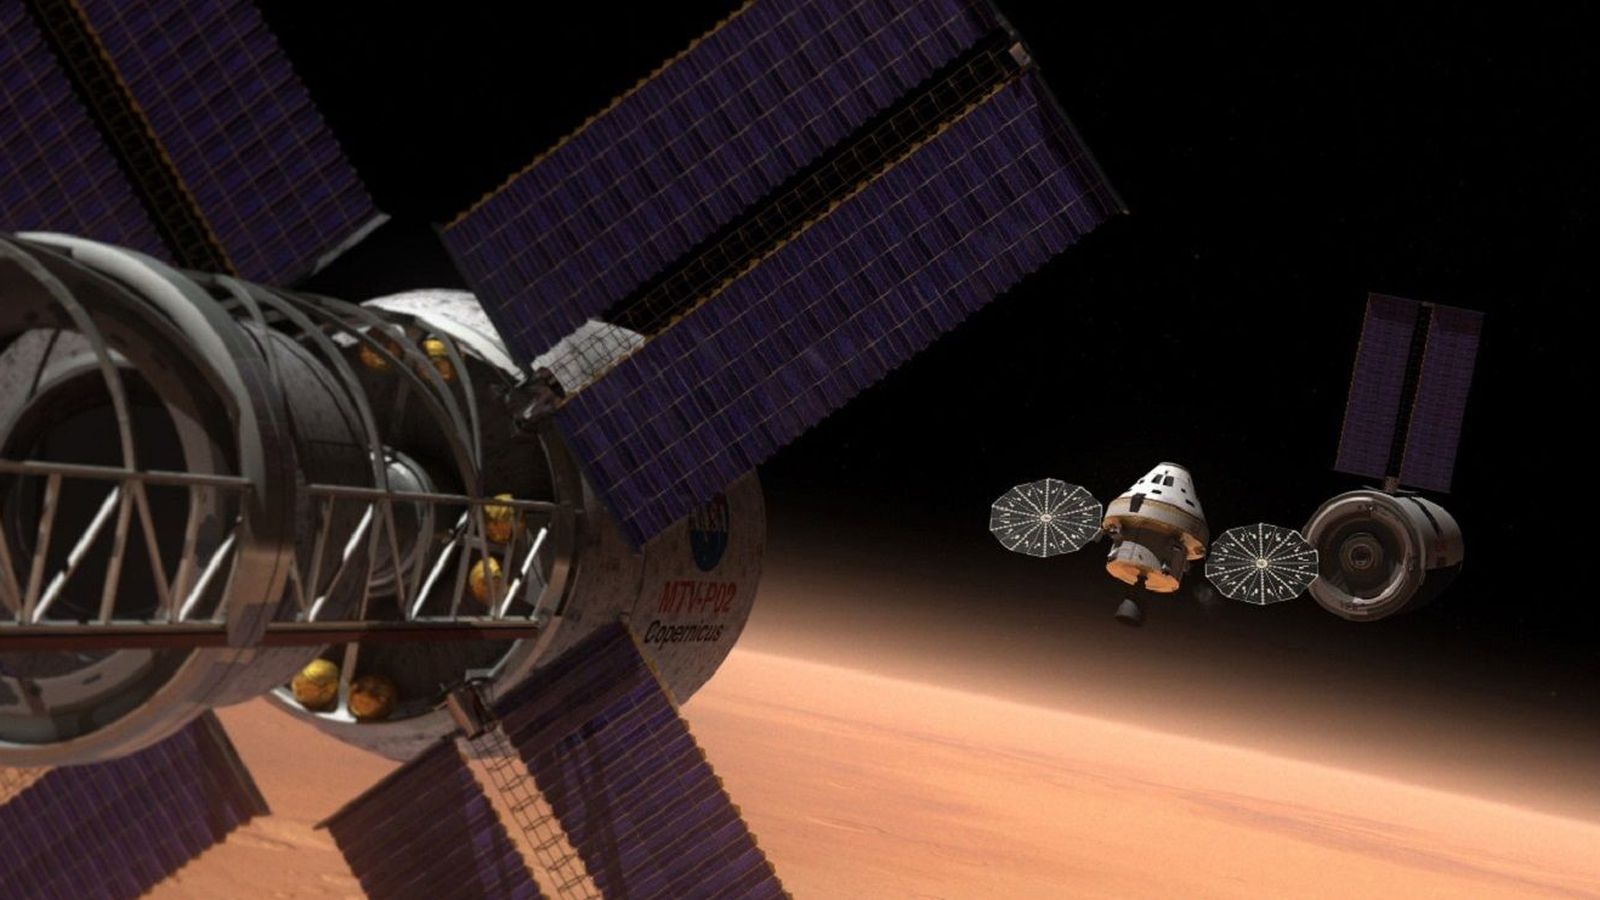 Foto: La NASA prepara de manera constante (y algo silenciosa) la infraestructura para viajar a Marte. (NASA)